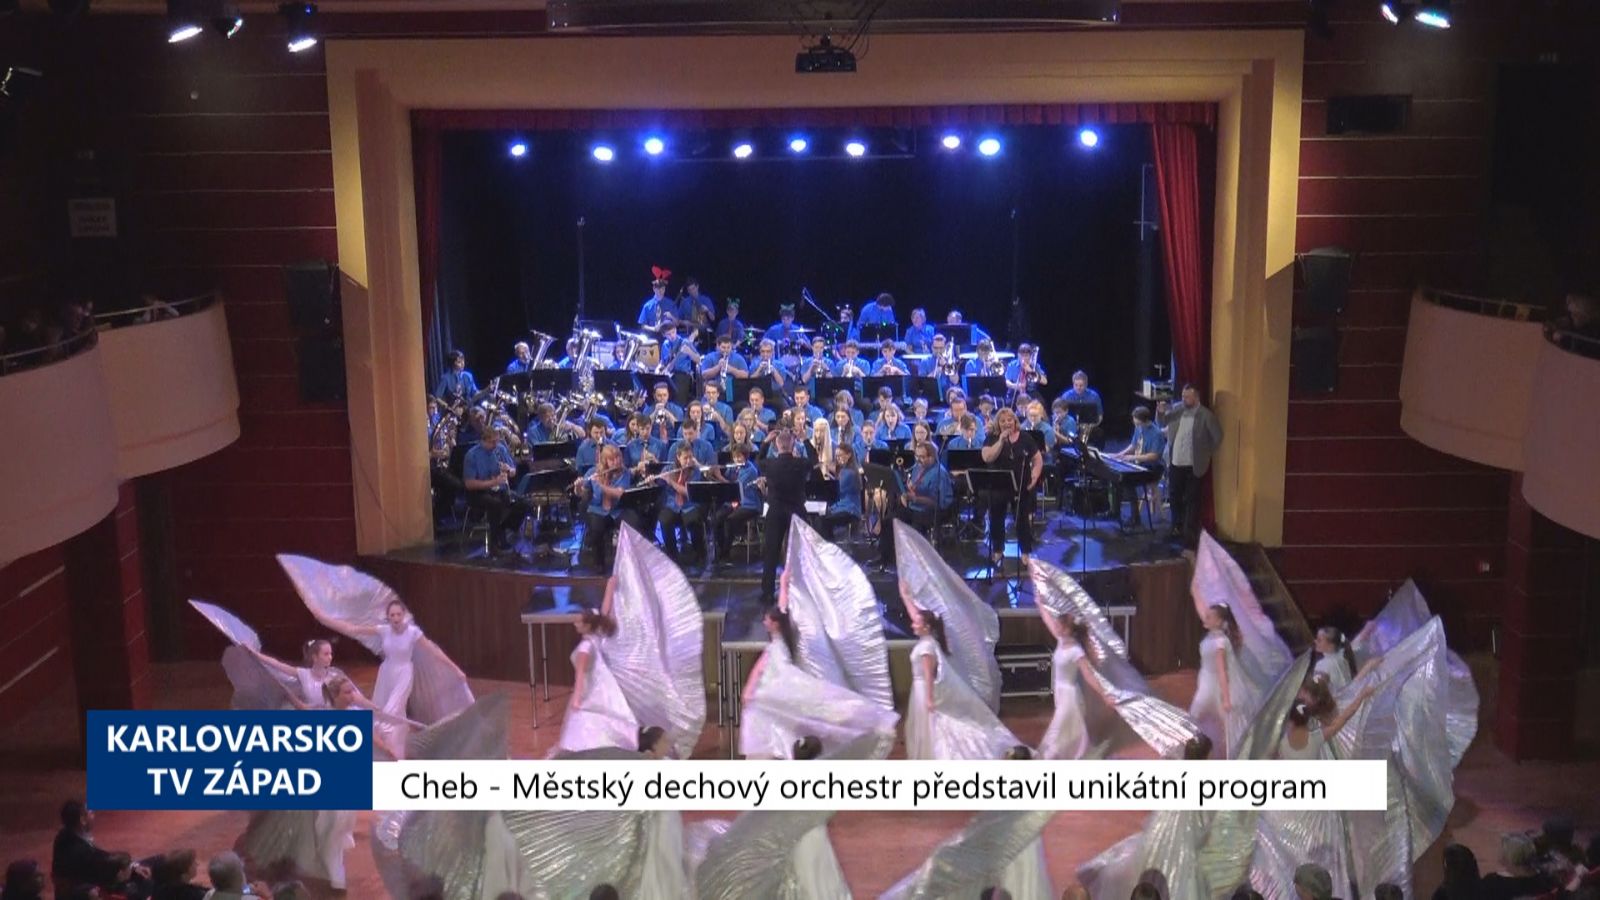 Cheb: Městský dechový orchestr představil unikátní program (TV Západ)